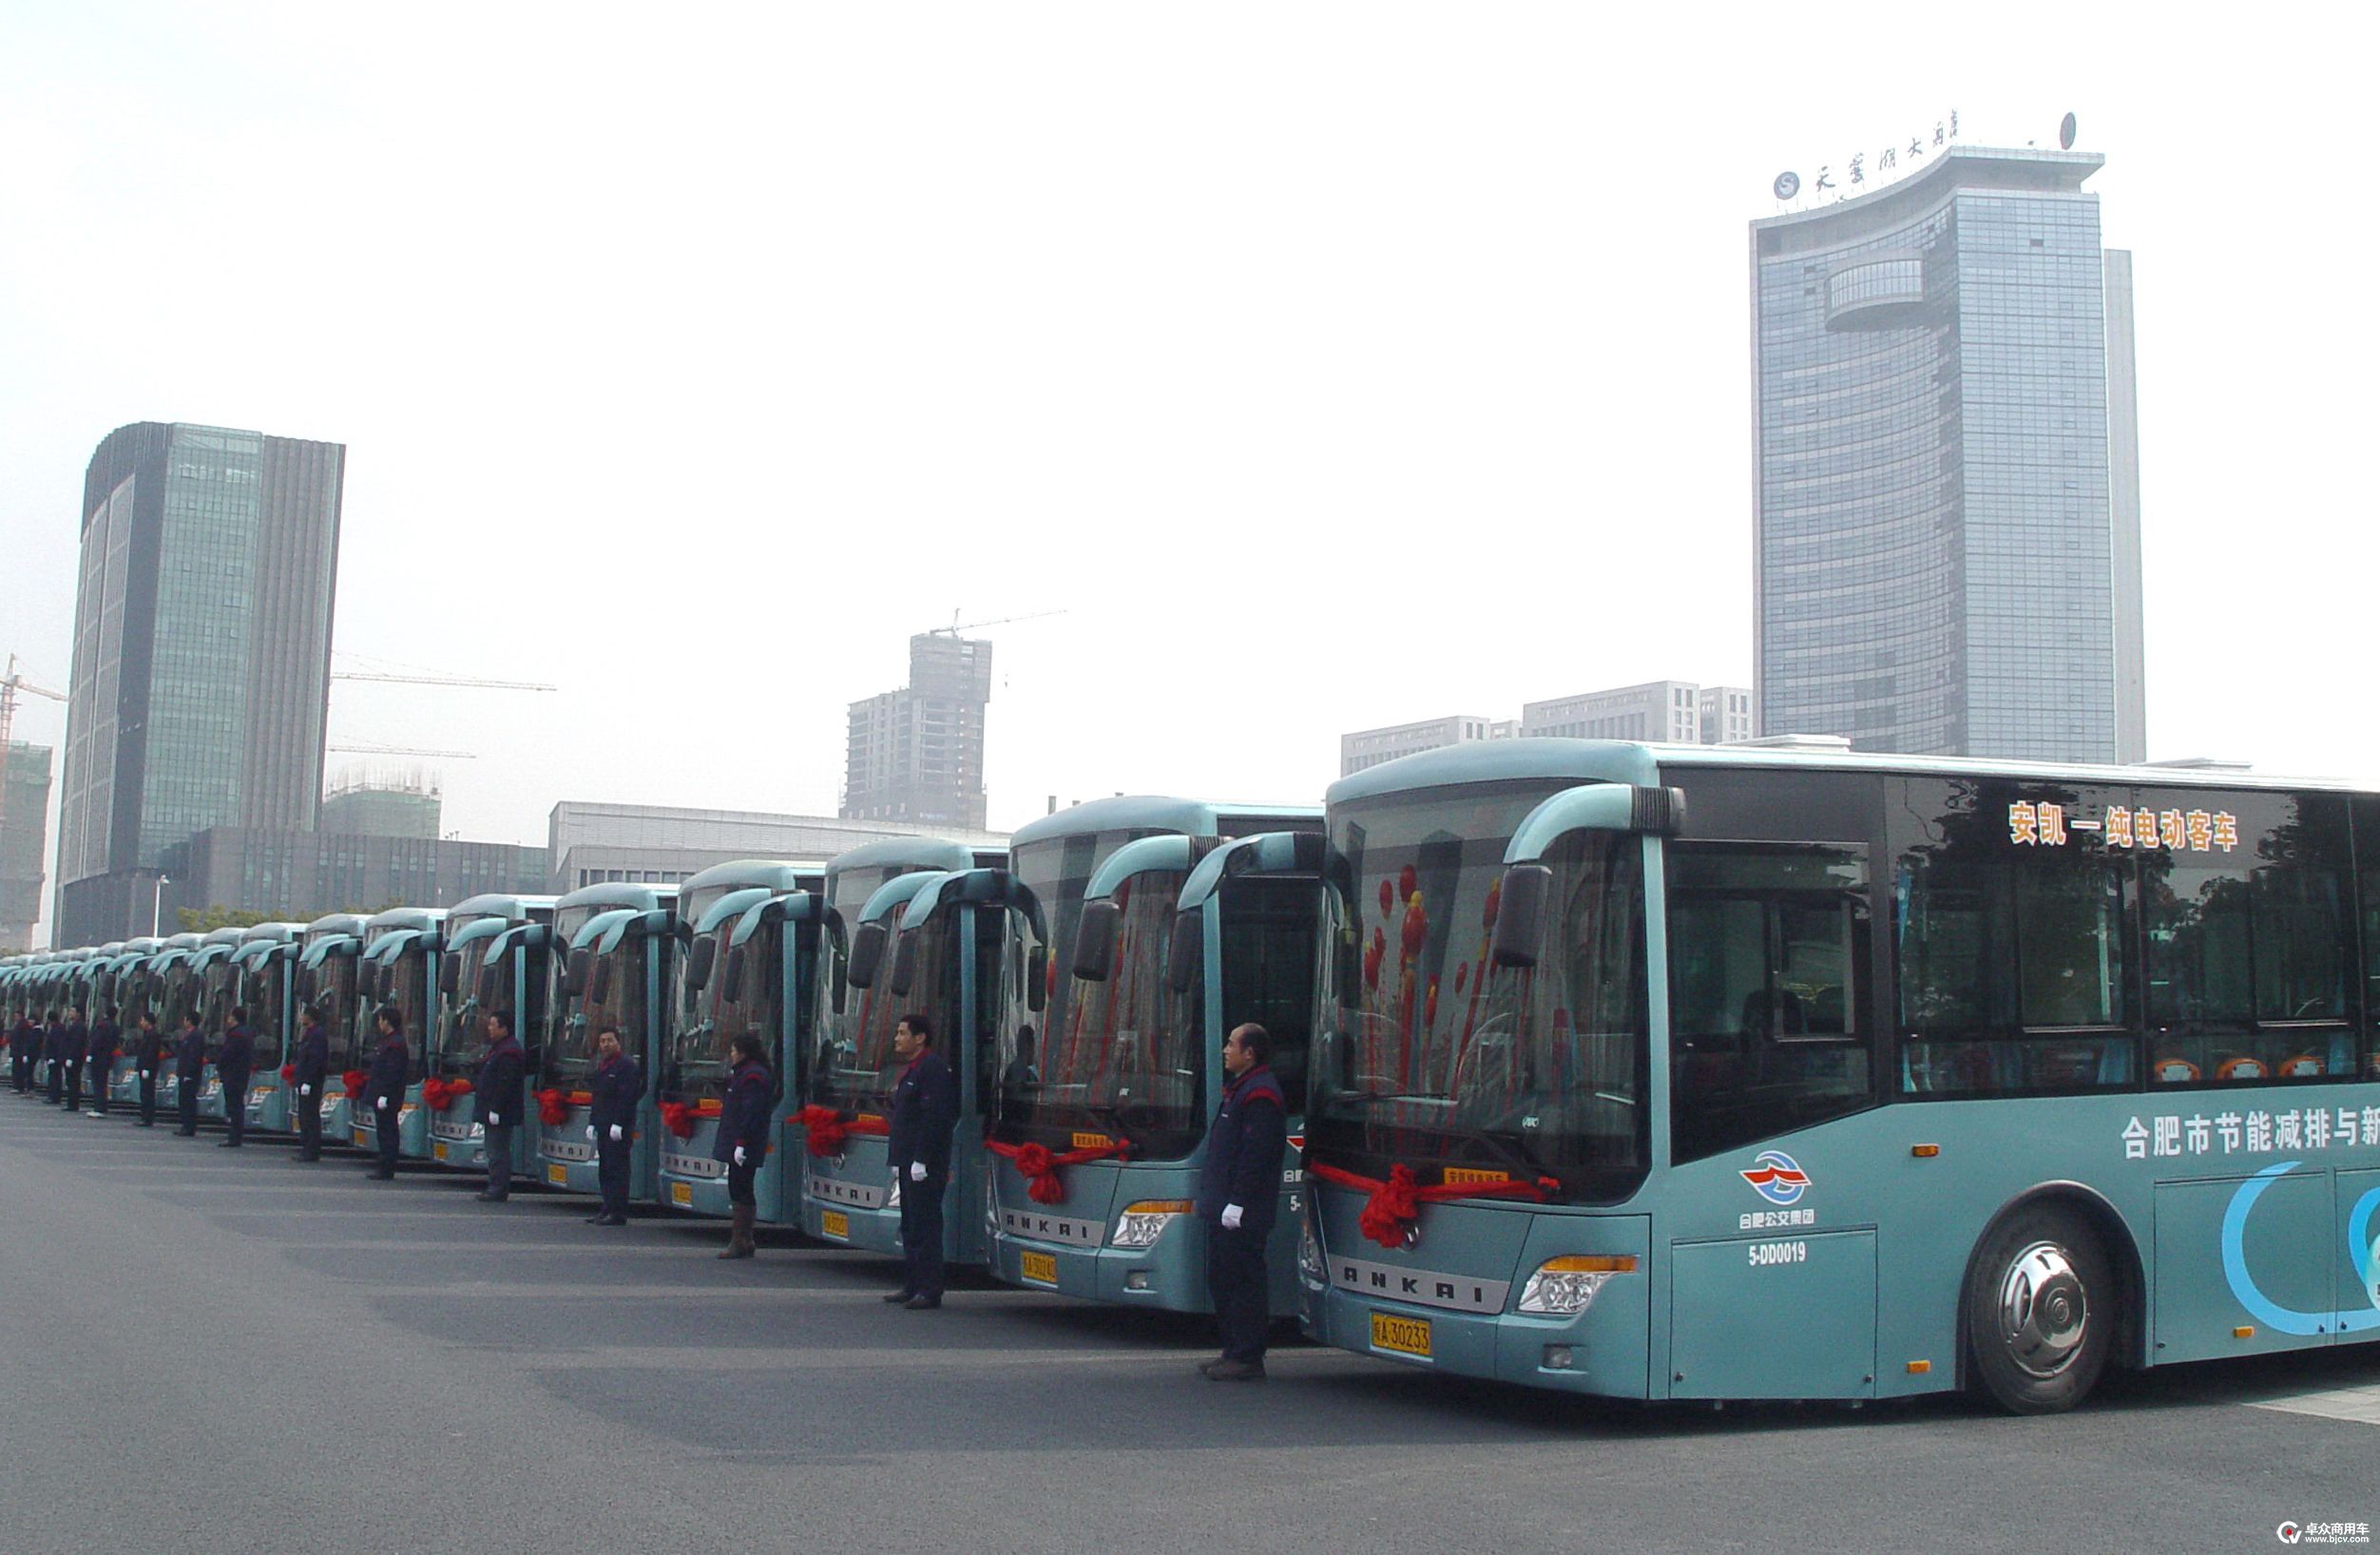 2-16-2010年，安凯30辆纯电动客车正式投入合肥18路运行，这是世界上第1条专用纯电动公交线路.jpg